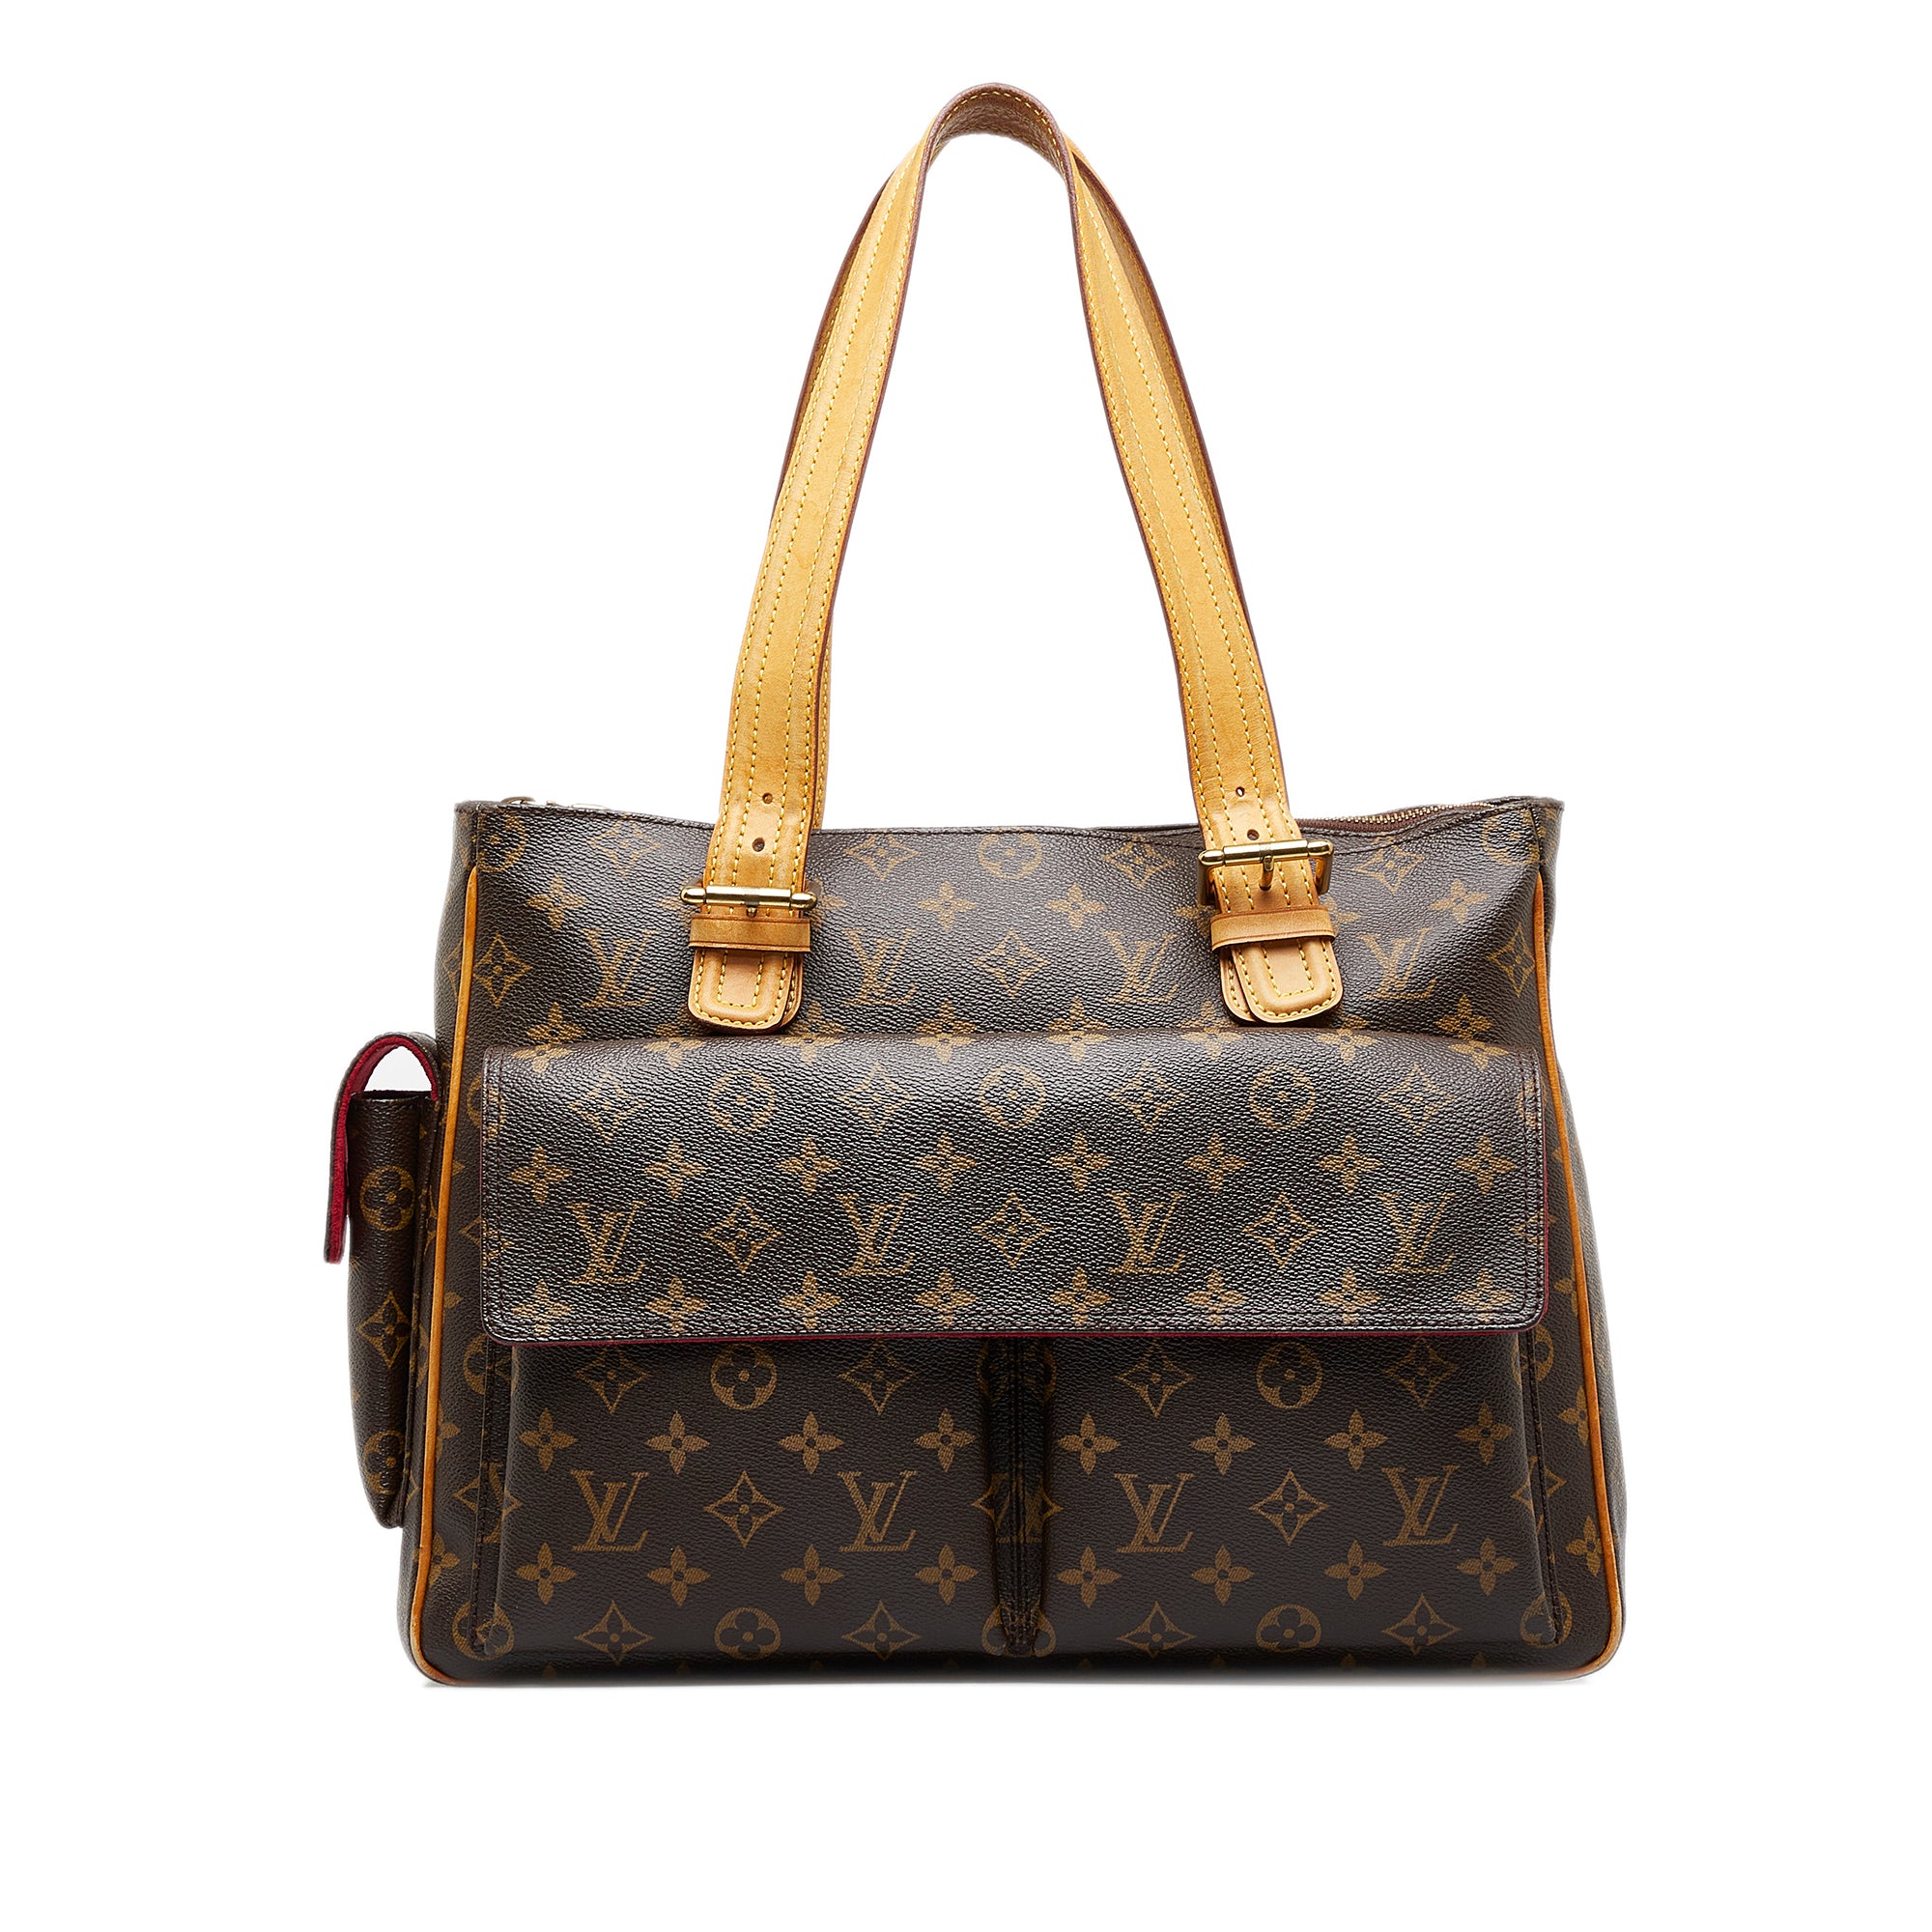 Louis Vuitton Cite Bag Review 